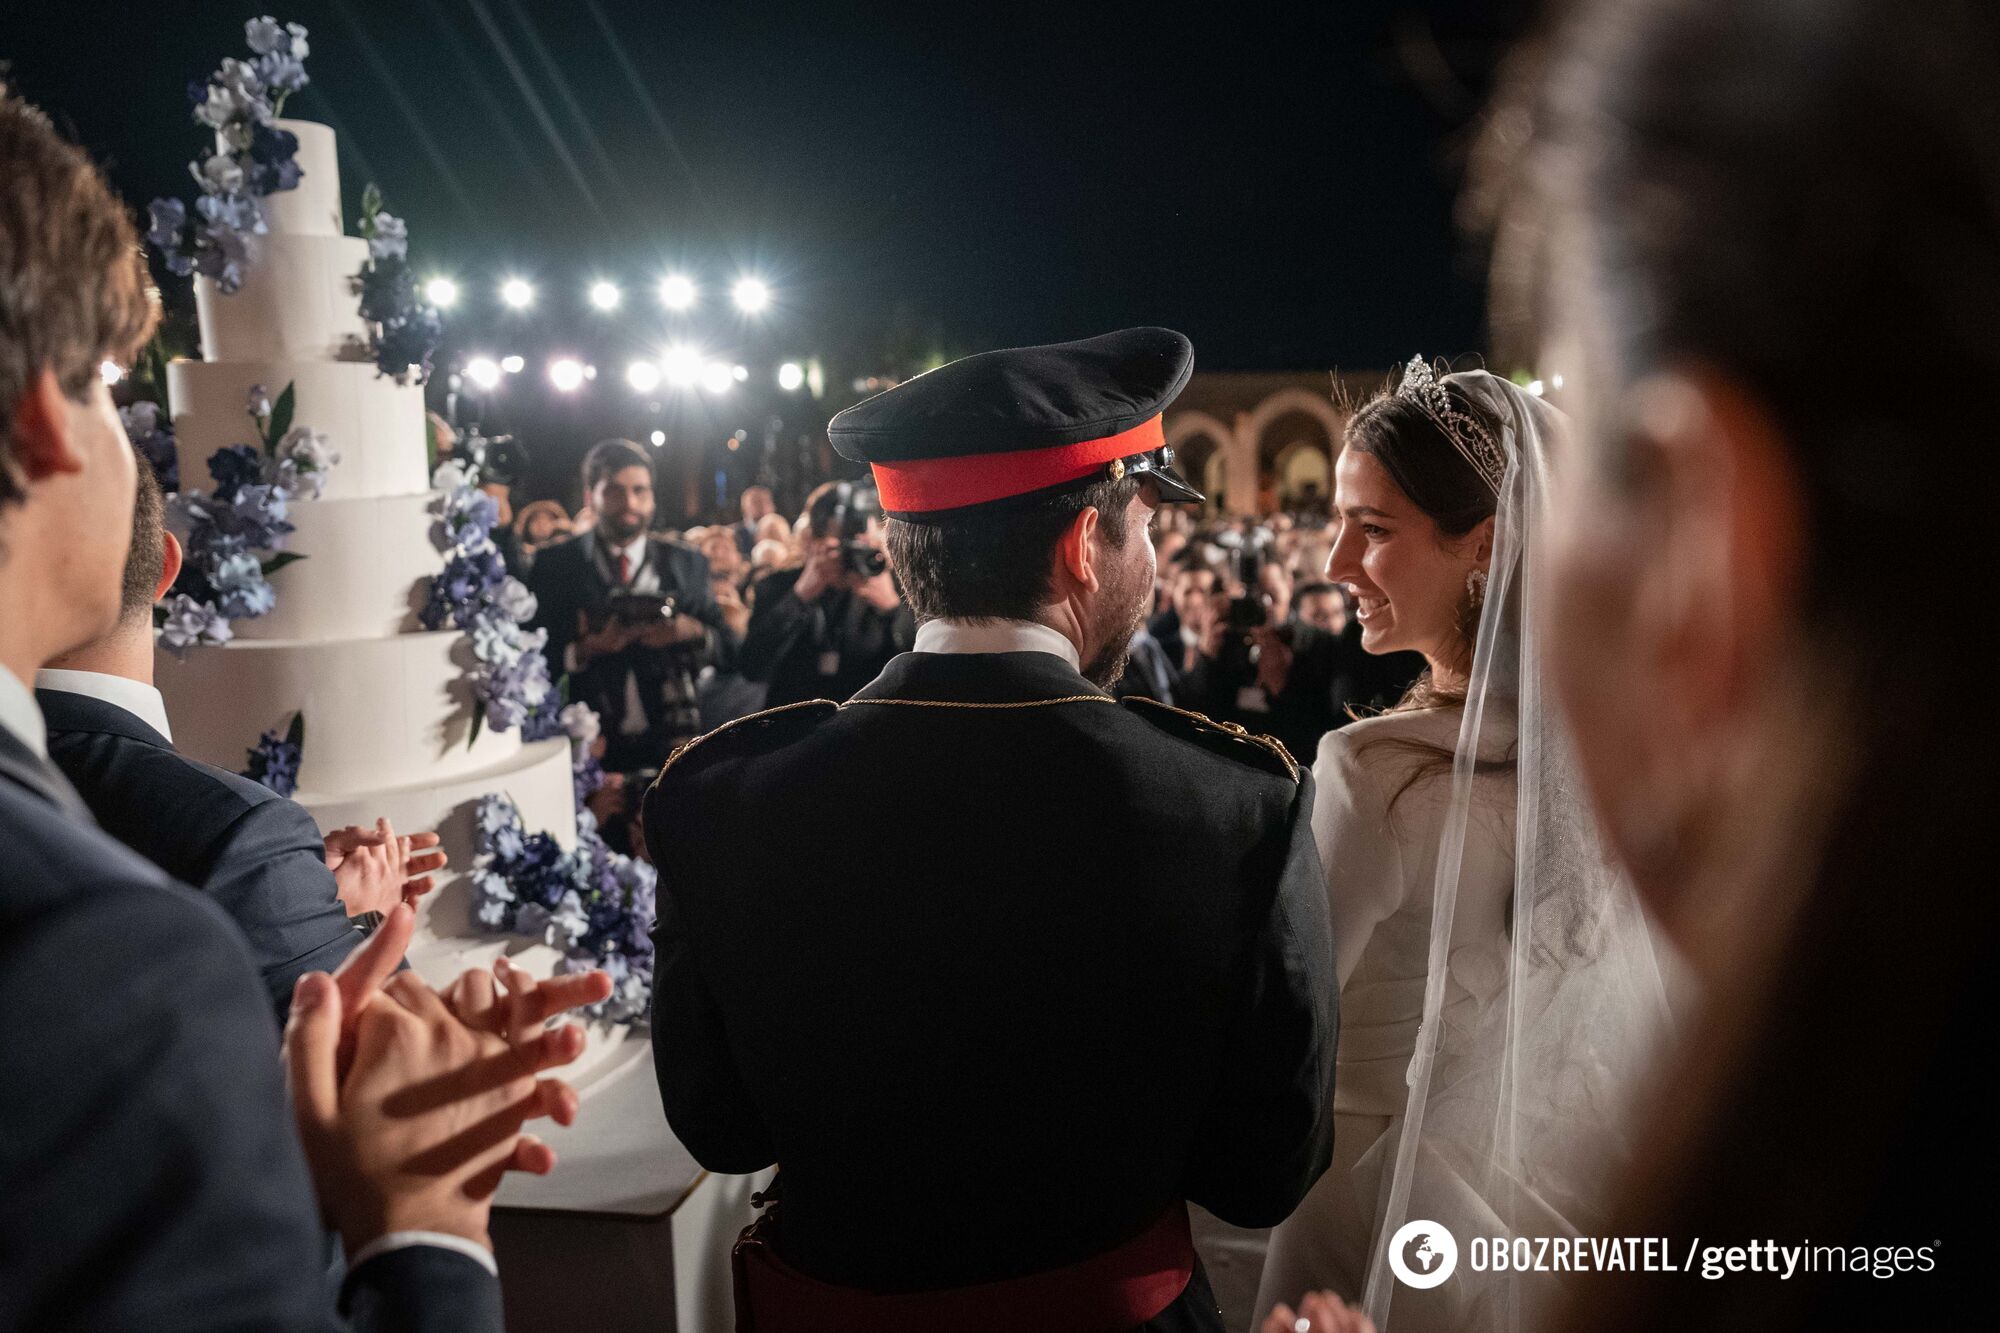 Спадковий принц Йорданії влаштував гучне весілля, яке святкувала вся країна. Фото та відео з церемонії